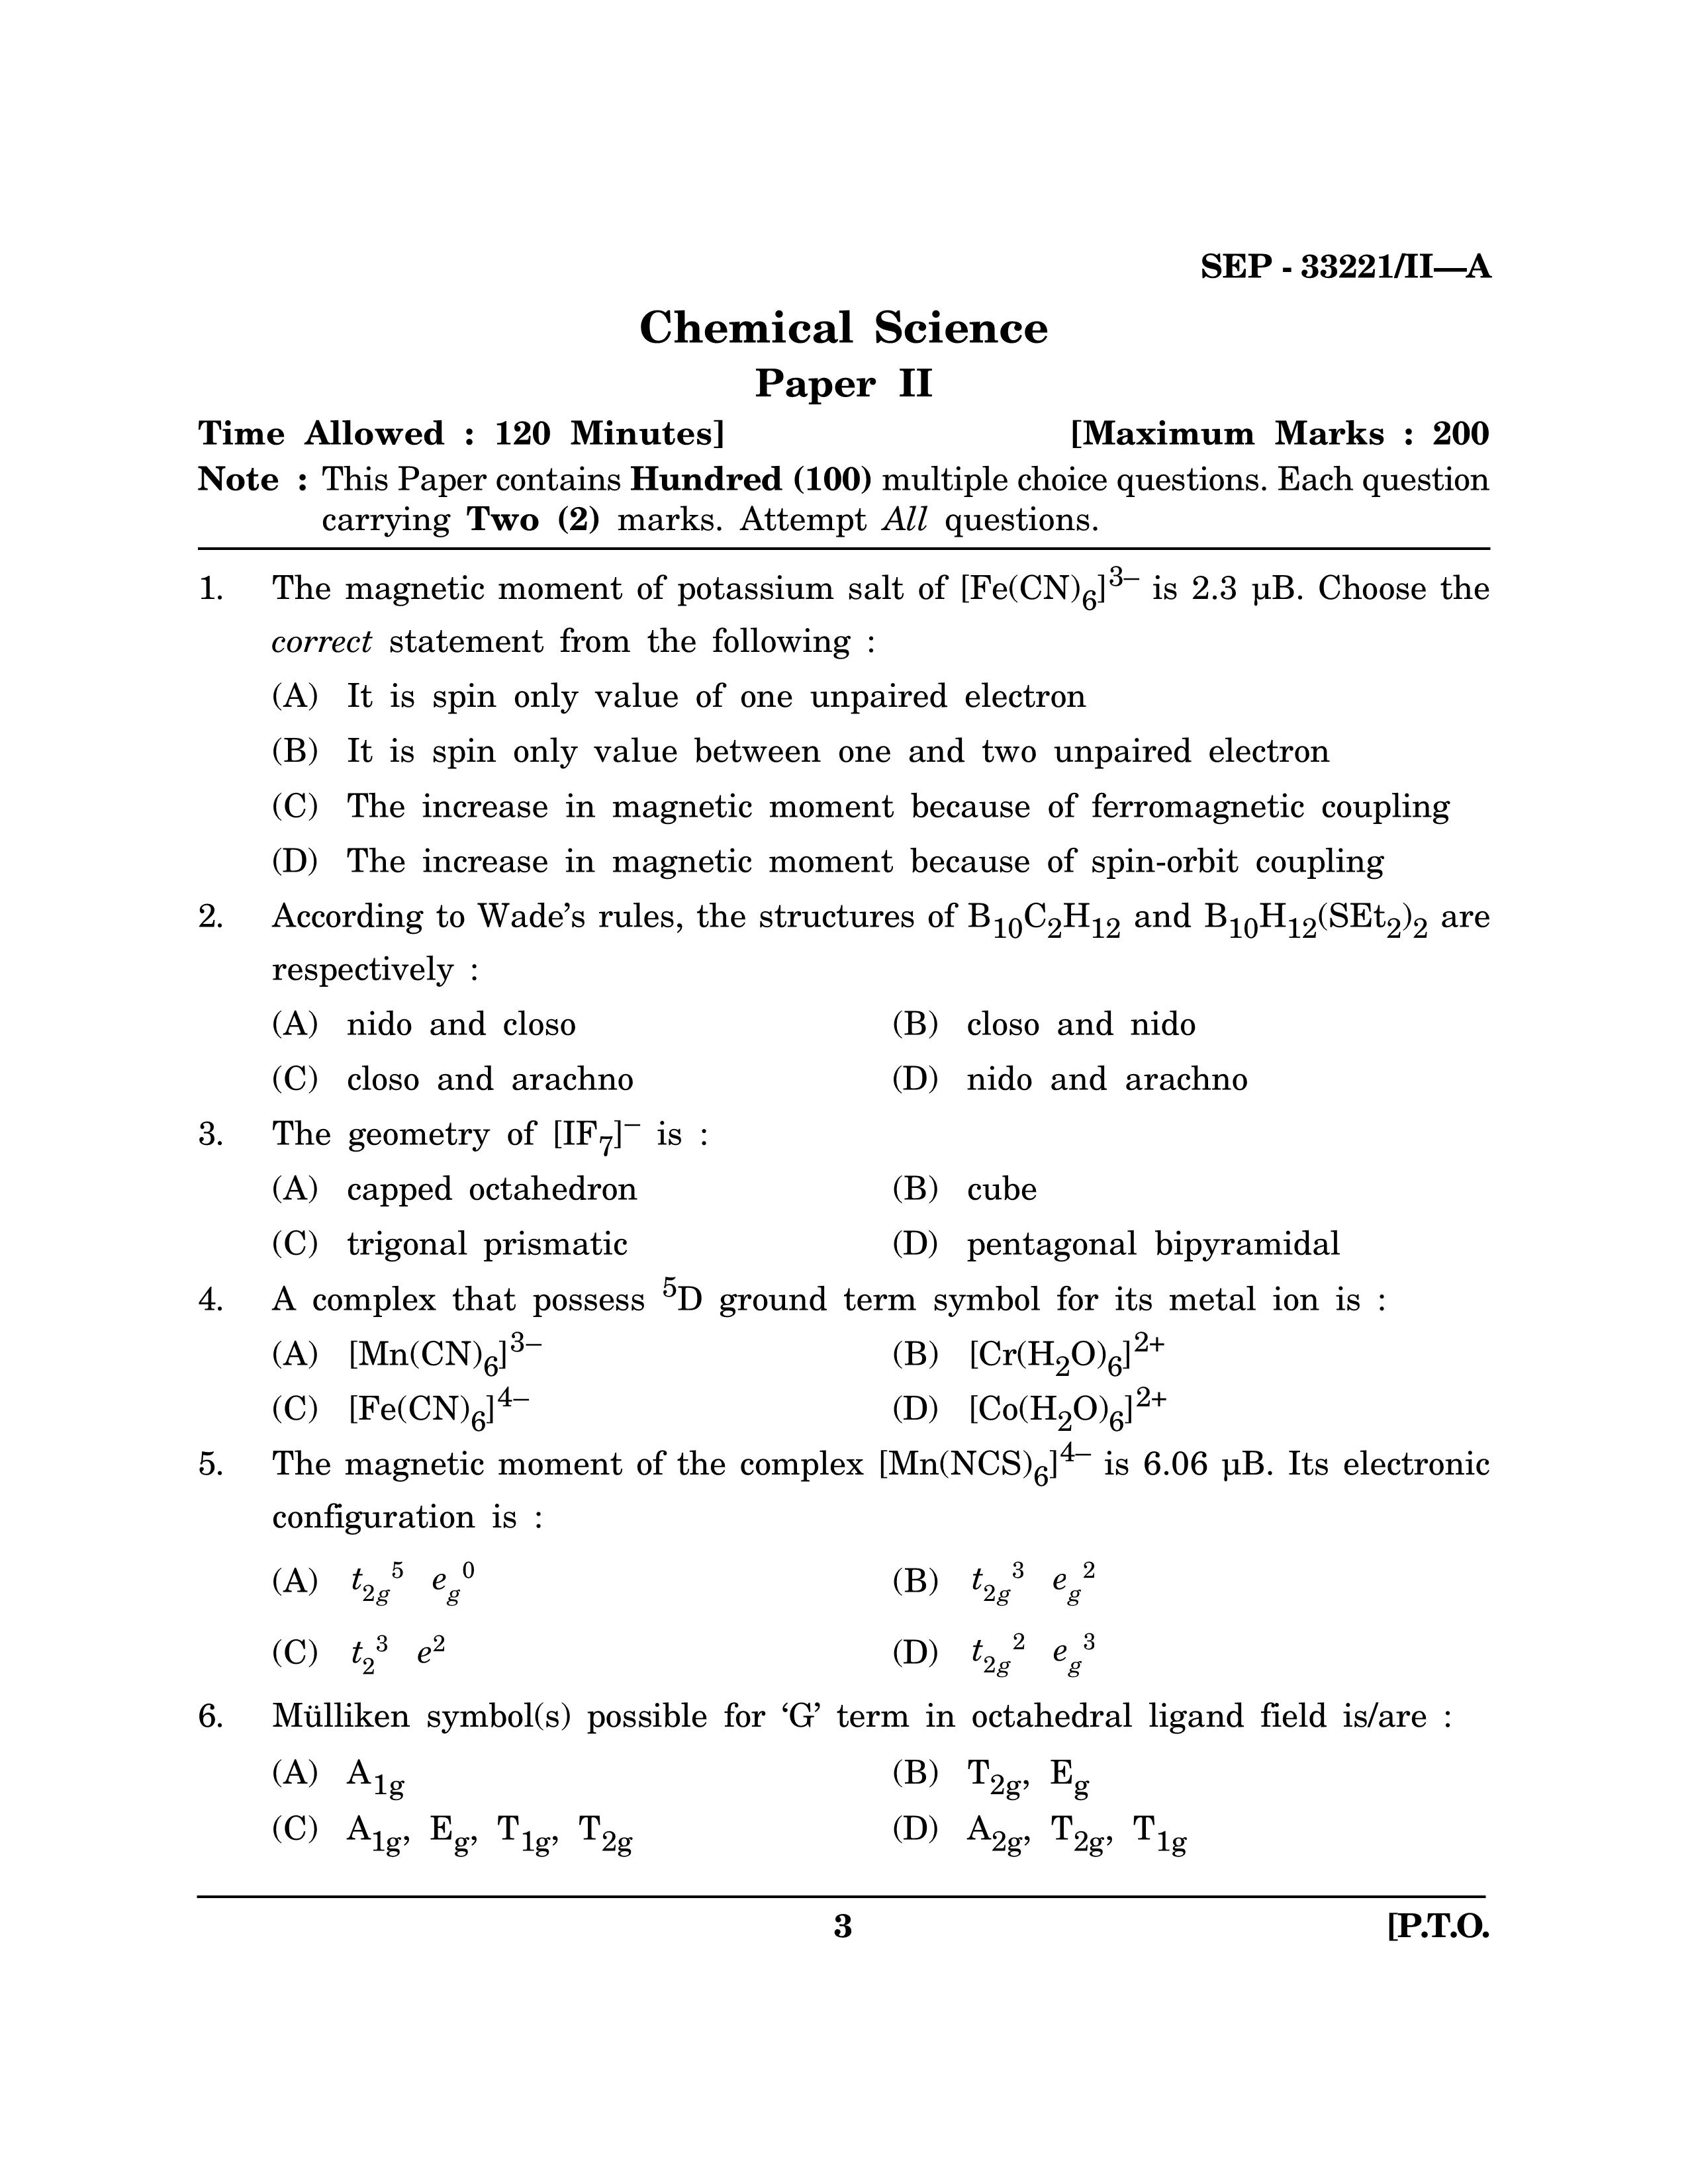 Maharashtra SET Chemical Sciences Exam Question Paper September 2021 2